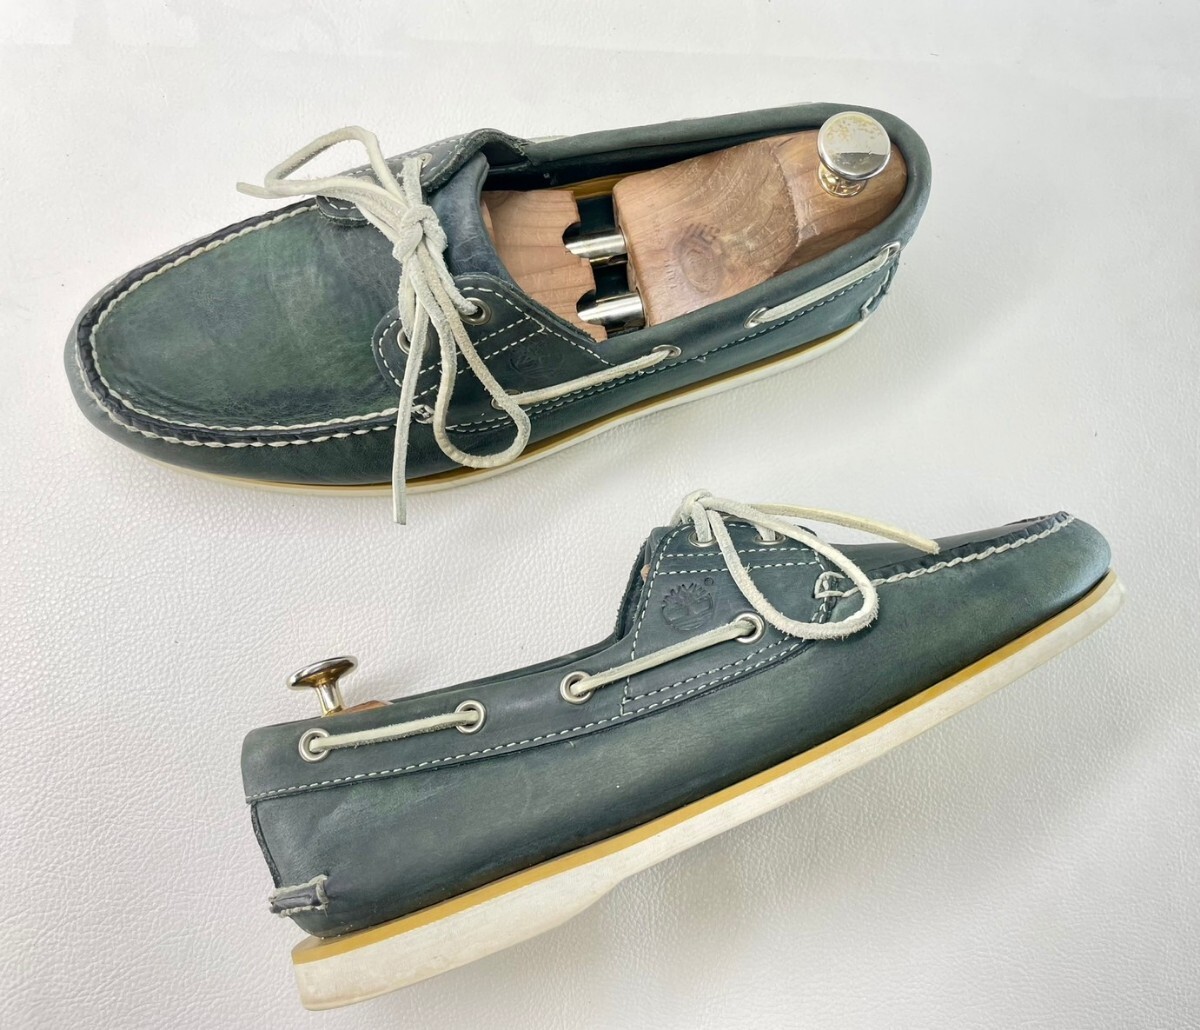  именная техника ..! редкий Vintage / старый модель! Timberland deck shoes / лодка обувь!kau кожа! темно-синий 9.5M надпись (27.5cm)